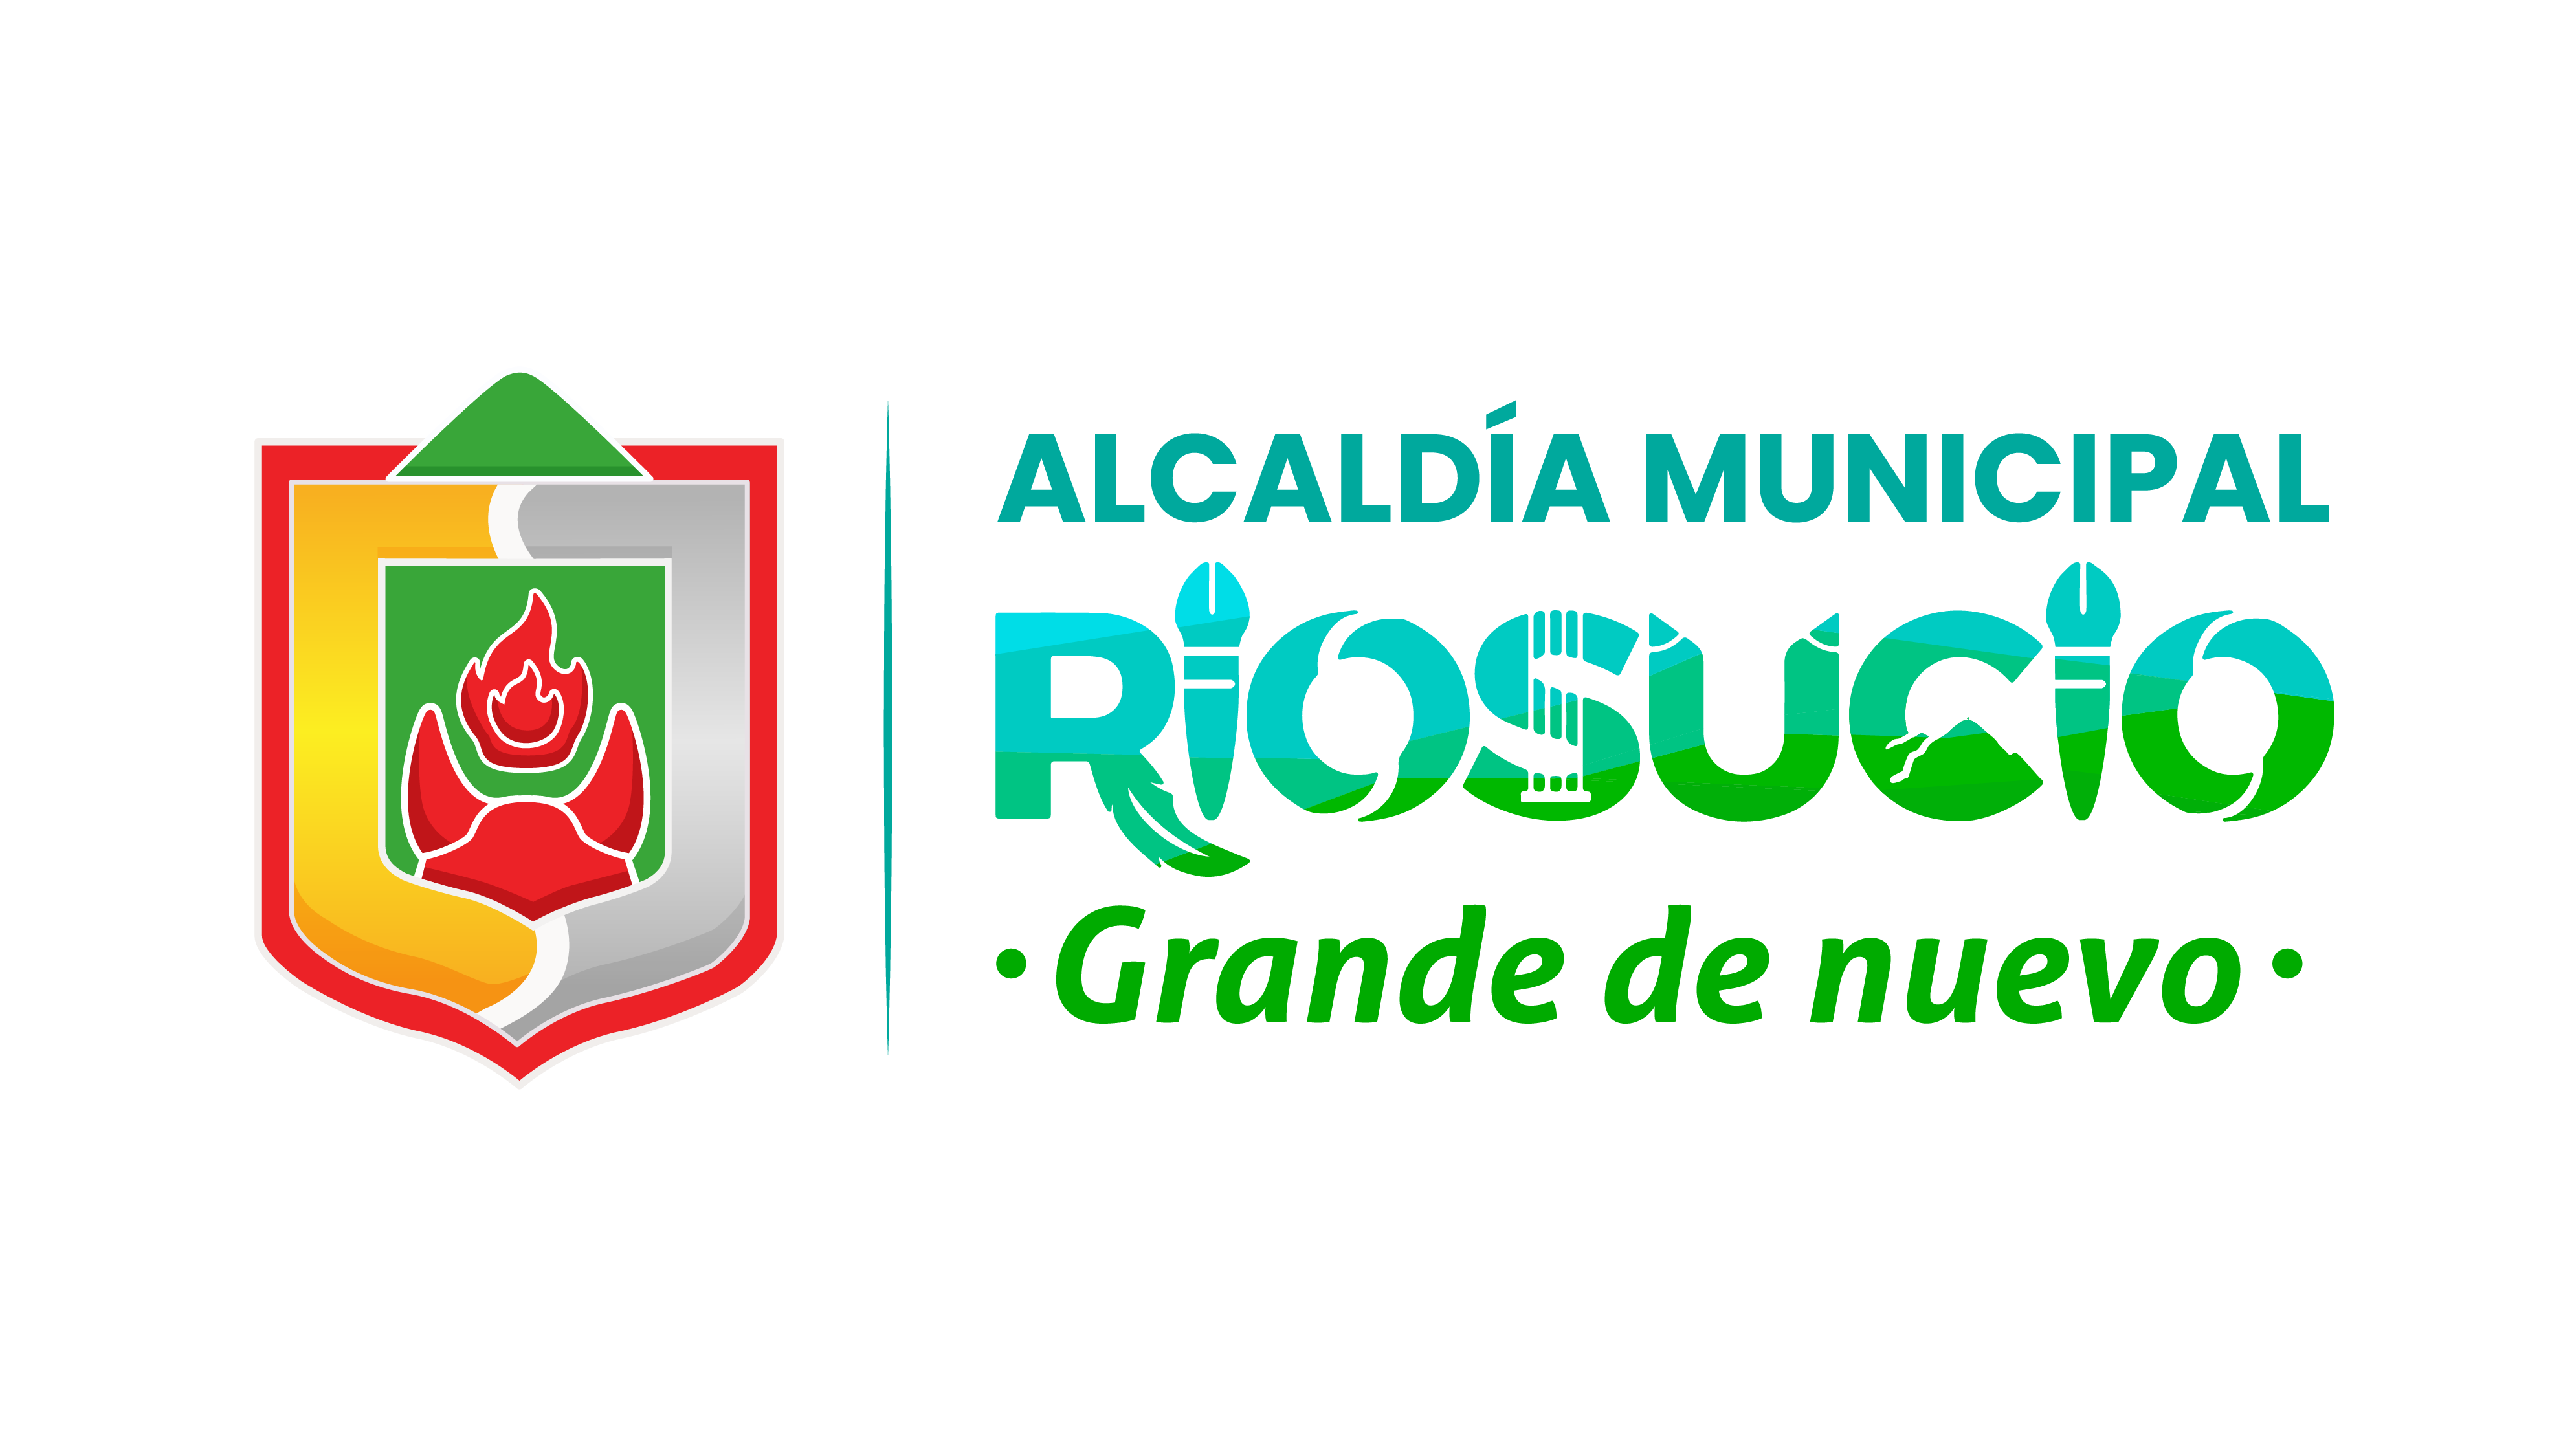 Escudo y Logo Alcaldía de Riosucio - disposición vertical